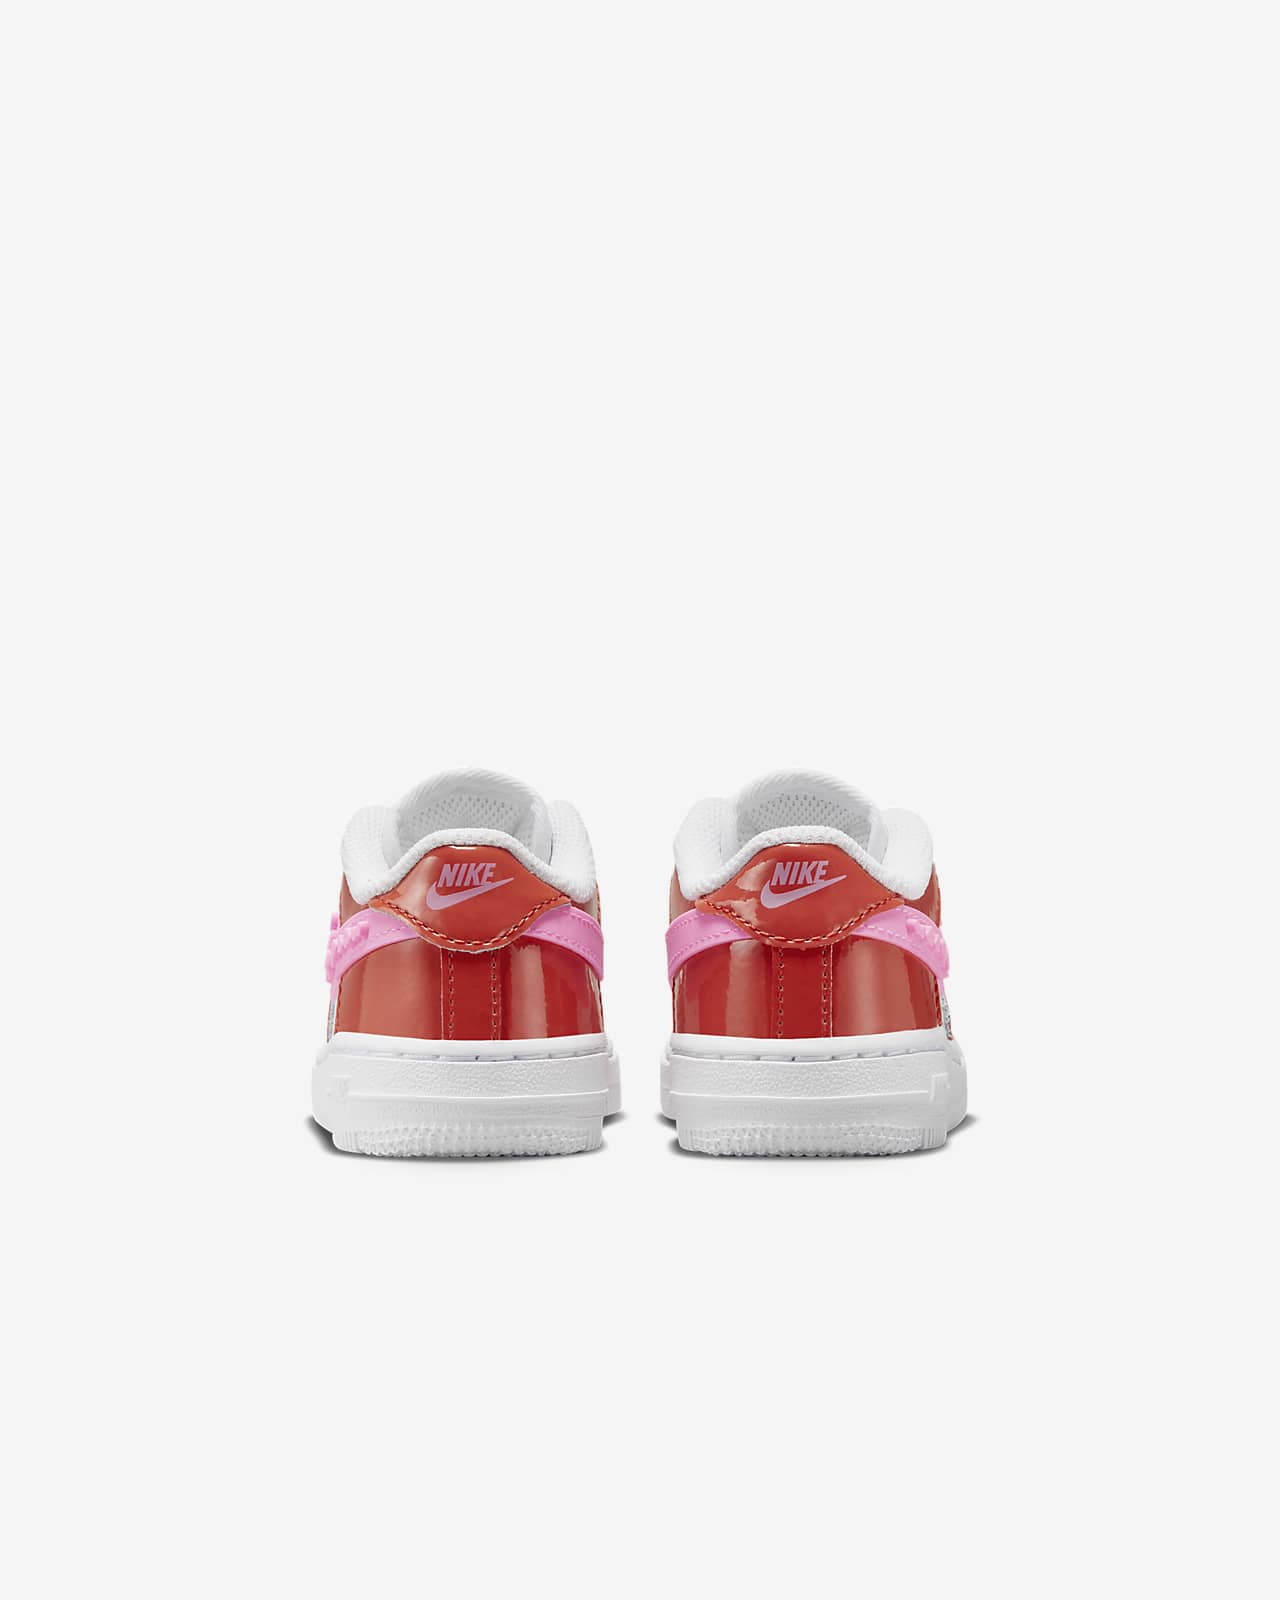 Nike Kids Force 1 LV8 1 (Infant/Toddler)